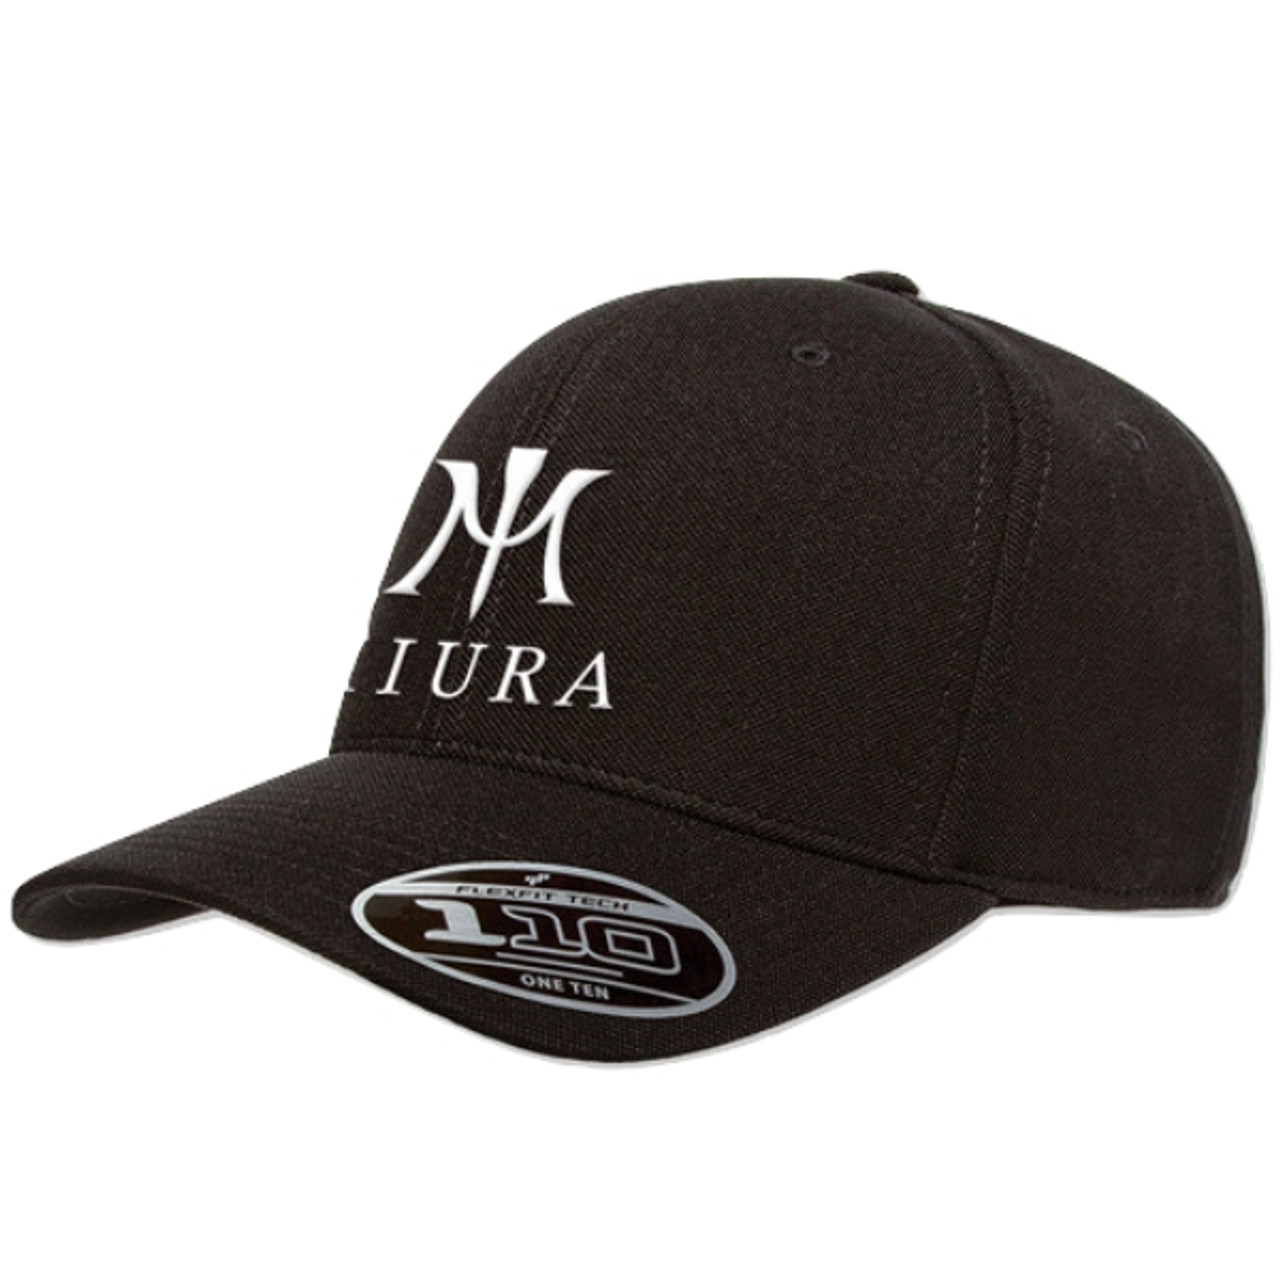 Miura FlexFit 110 Hats - Tour Shop Fresno